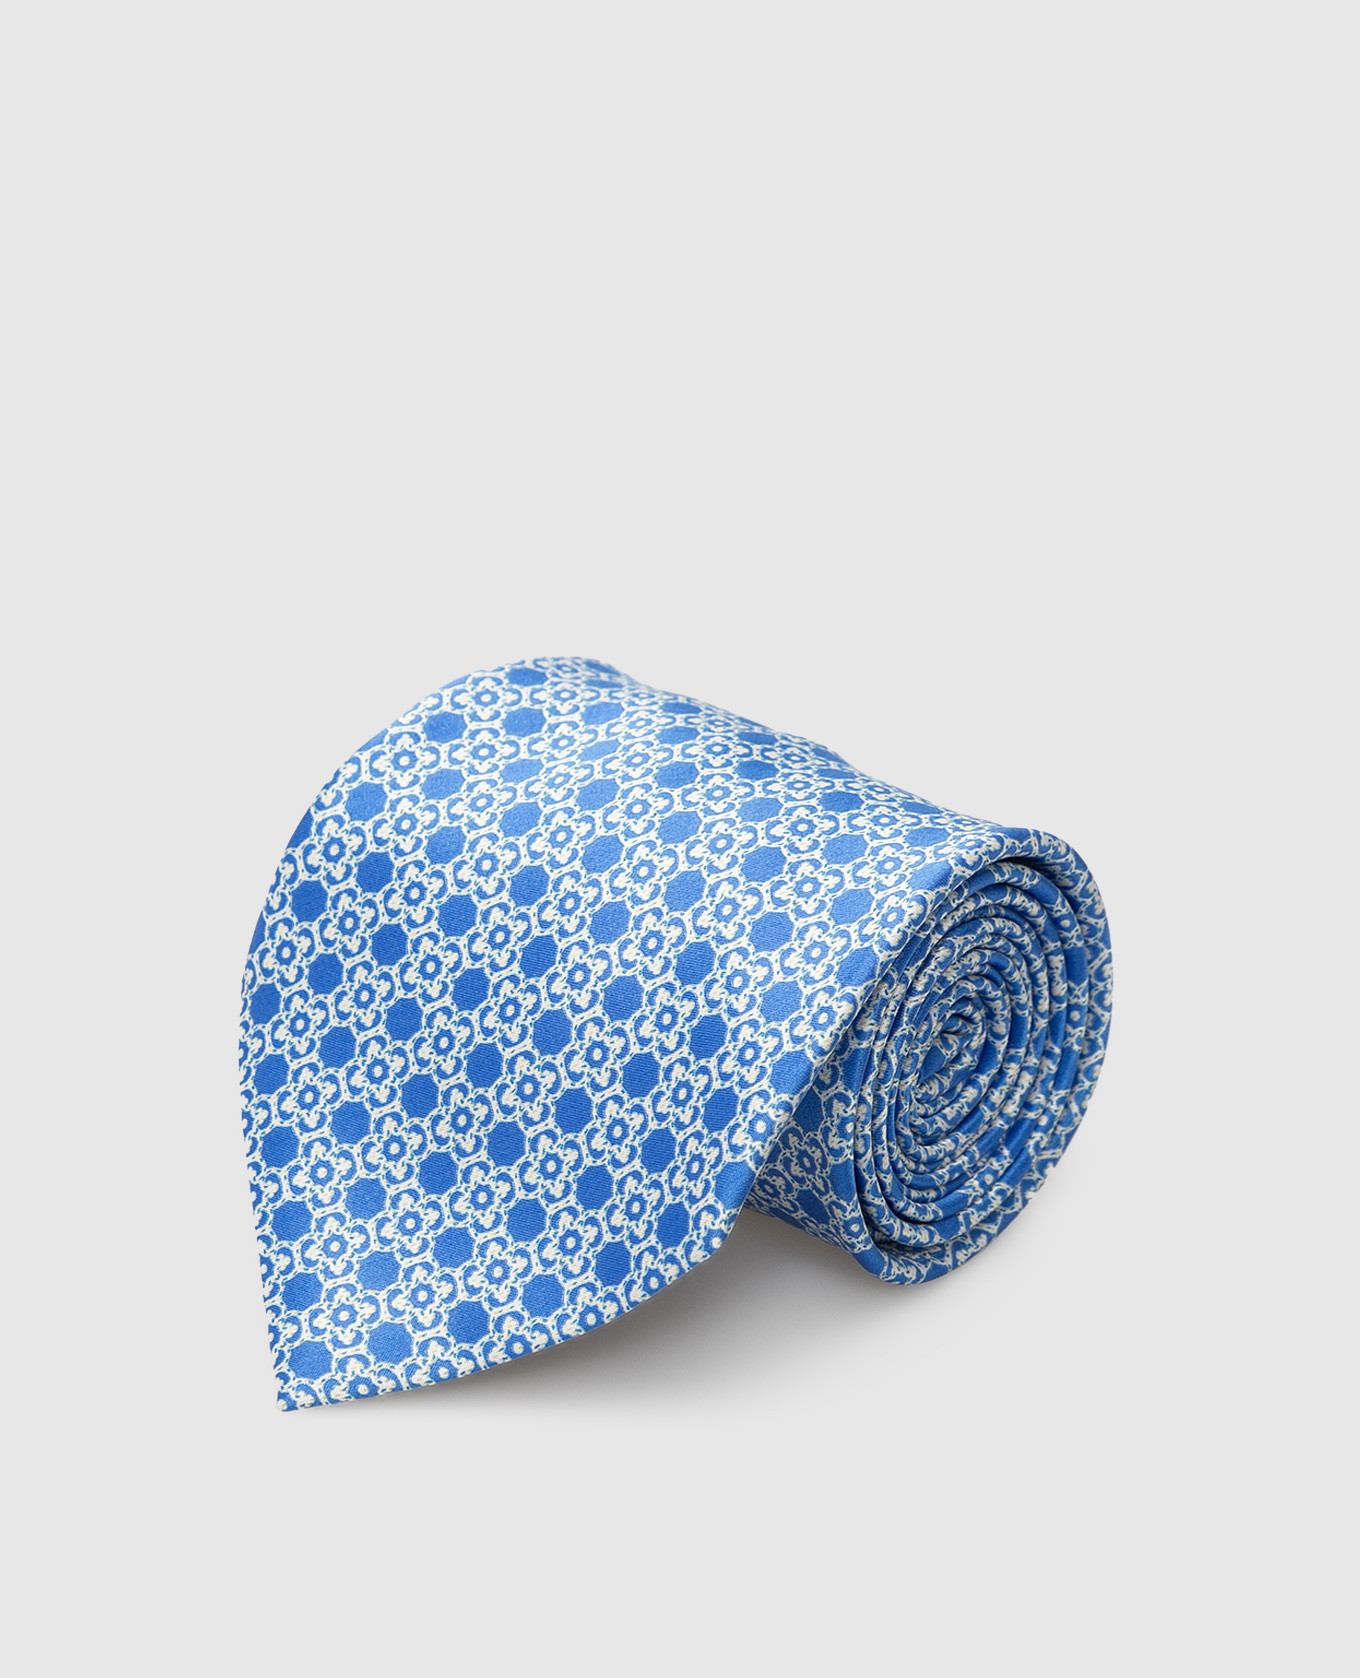 Blue silk tie in a geometric pattern